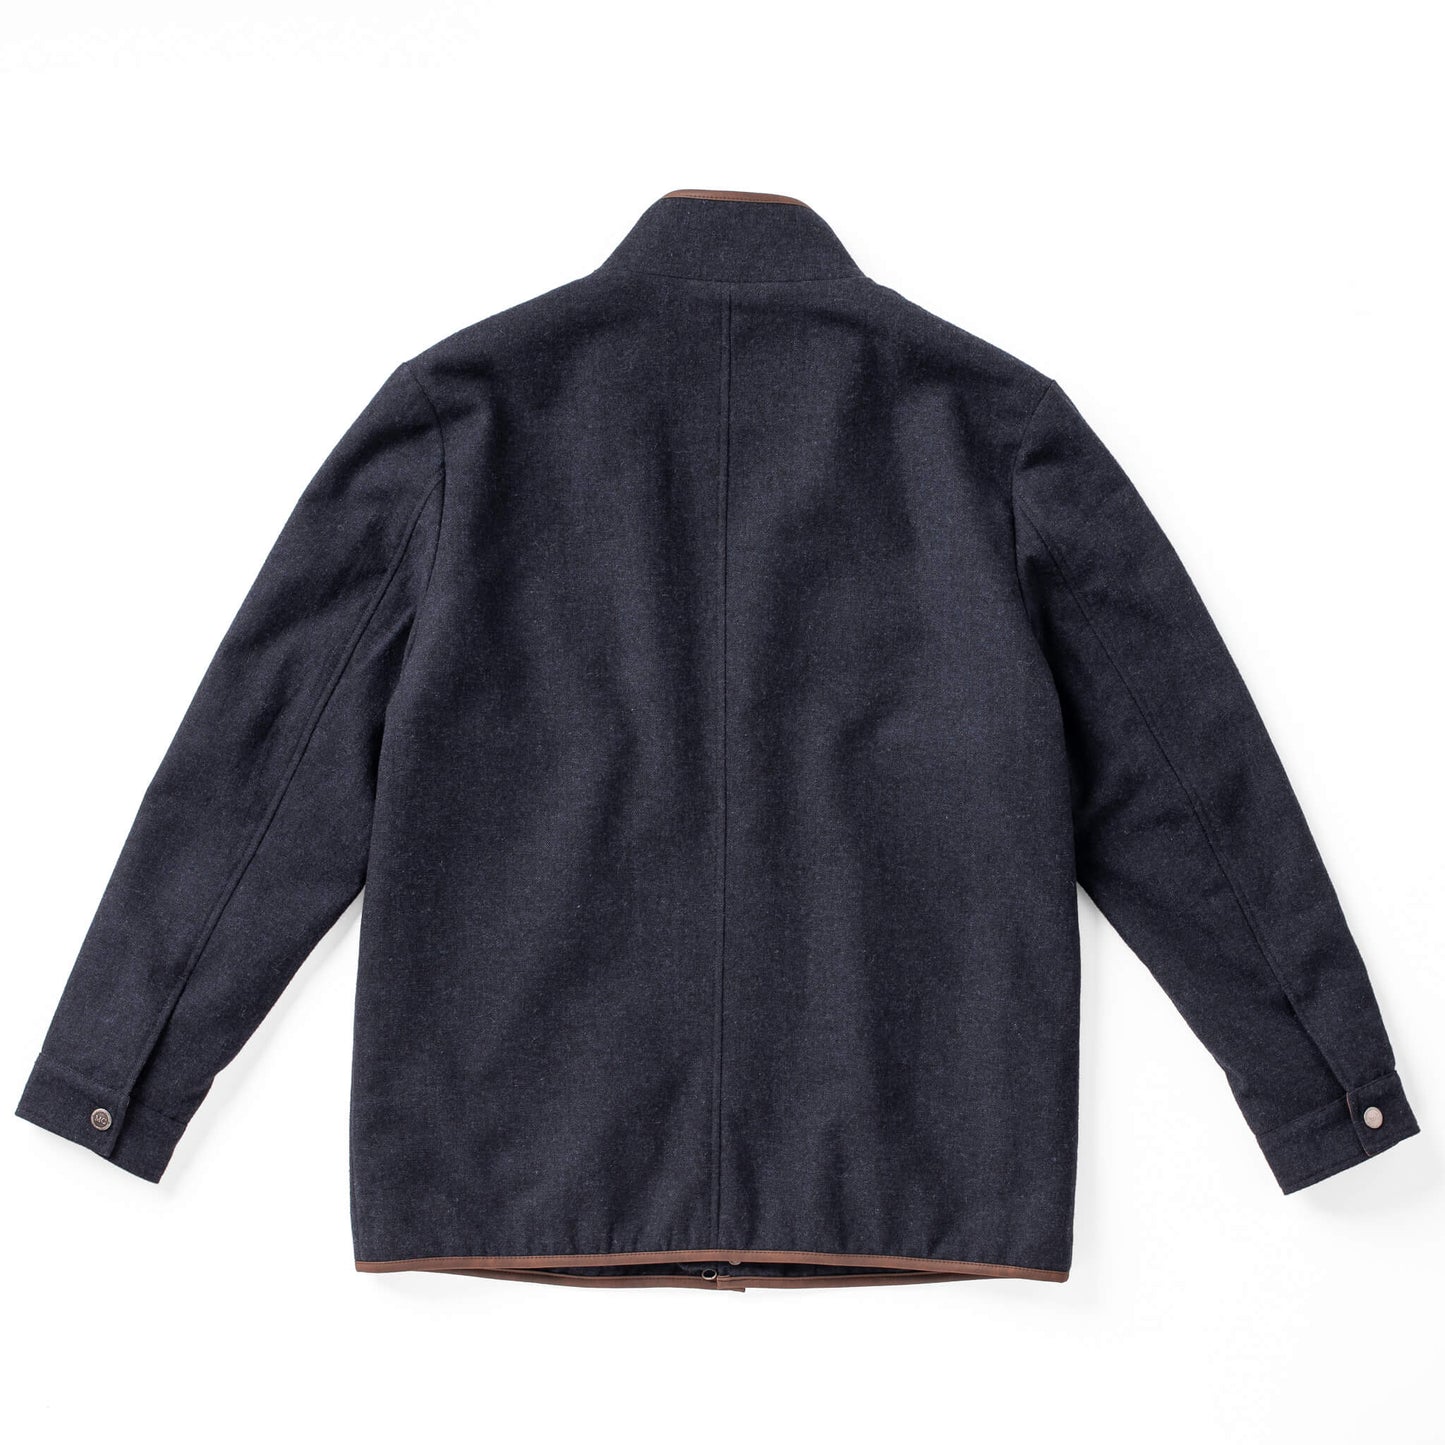 Grayson Wool Jacket